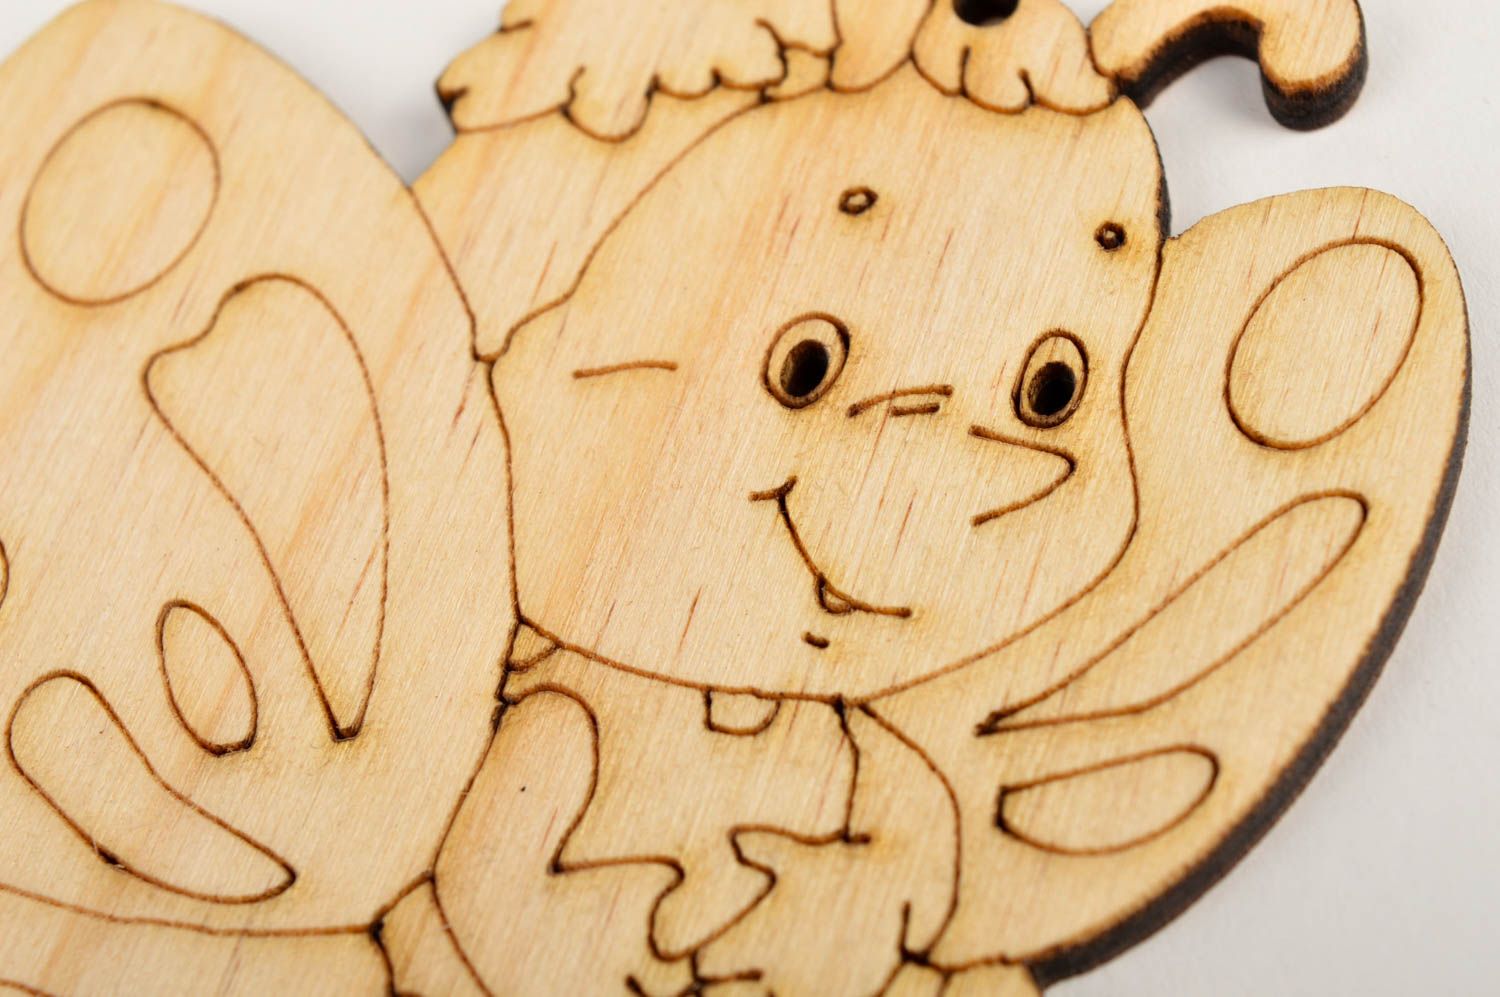 Cute handmade wooden blank toy gift ideas for kids art materials art supplies photo 4